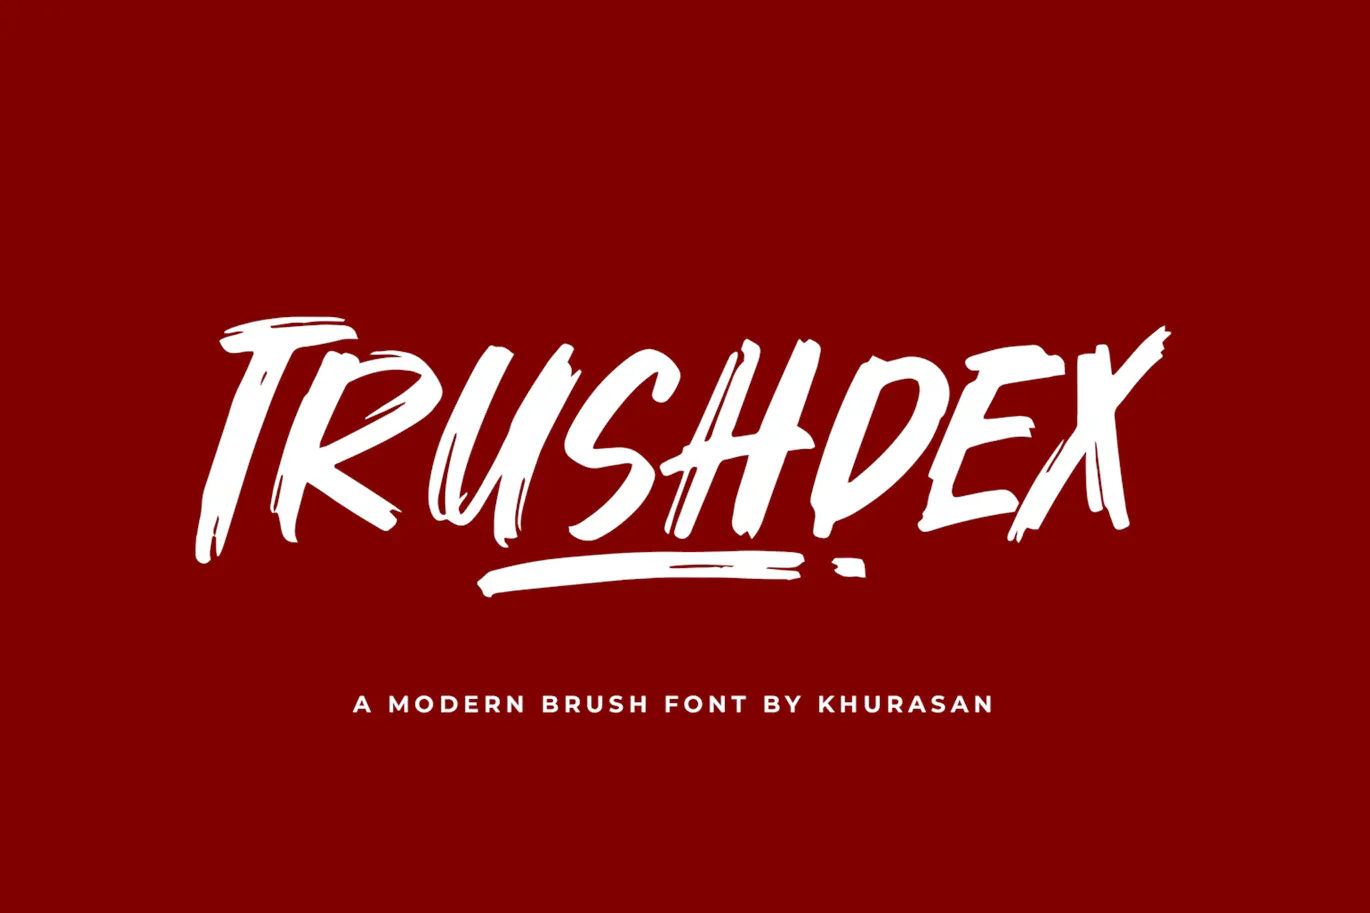 优雅而现代英文装饰字体 - Trushdex 设计字体 第1张